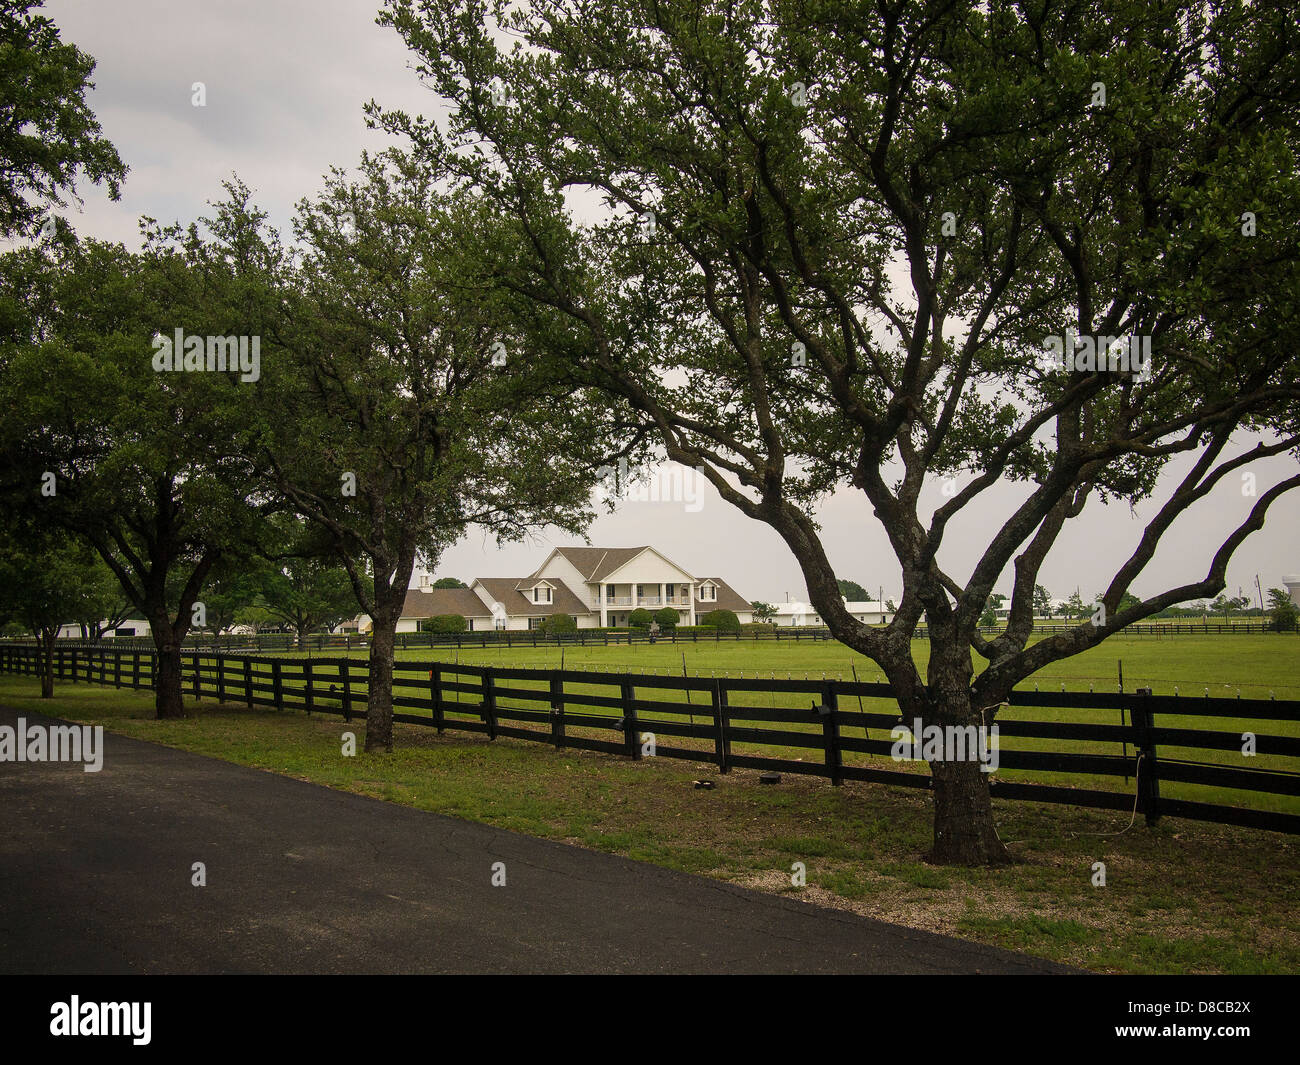 Le Southfork Ranch où la série TV Dallas a été filmé. Couvrant les défis d'une riche famille du Texas et frère de la rivalité. Banque D'Images